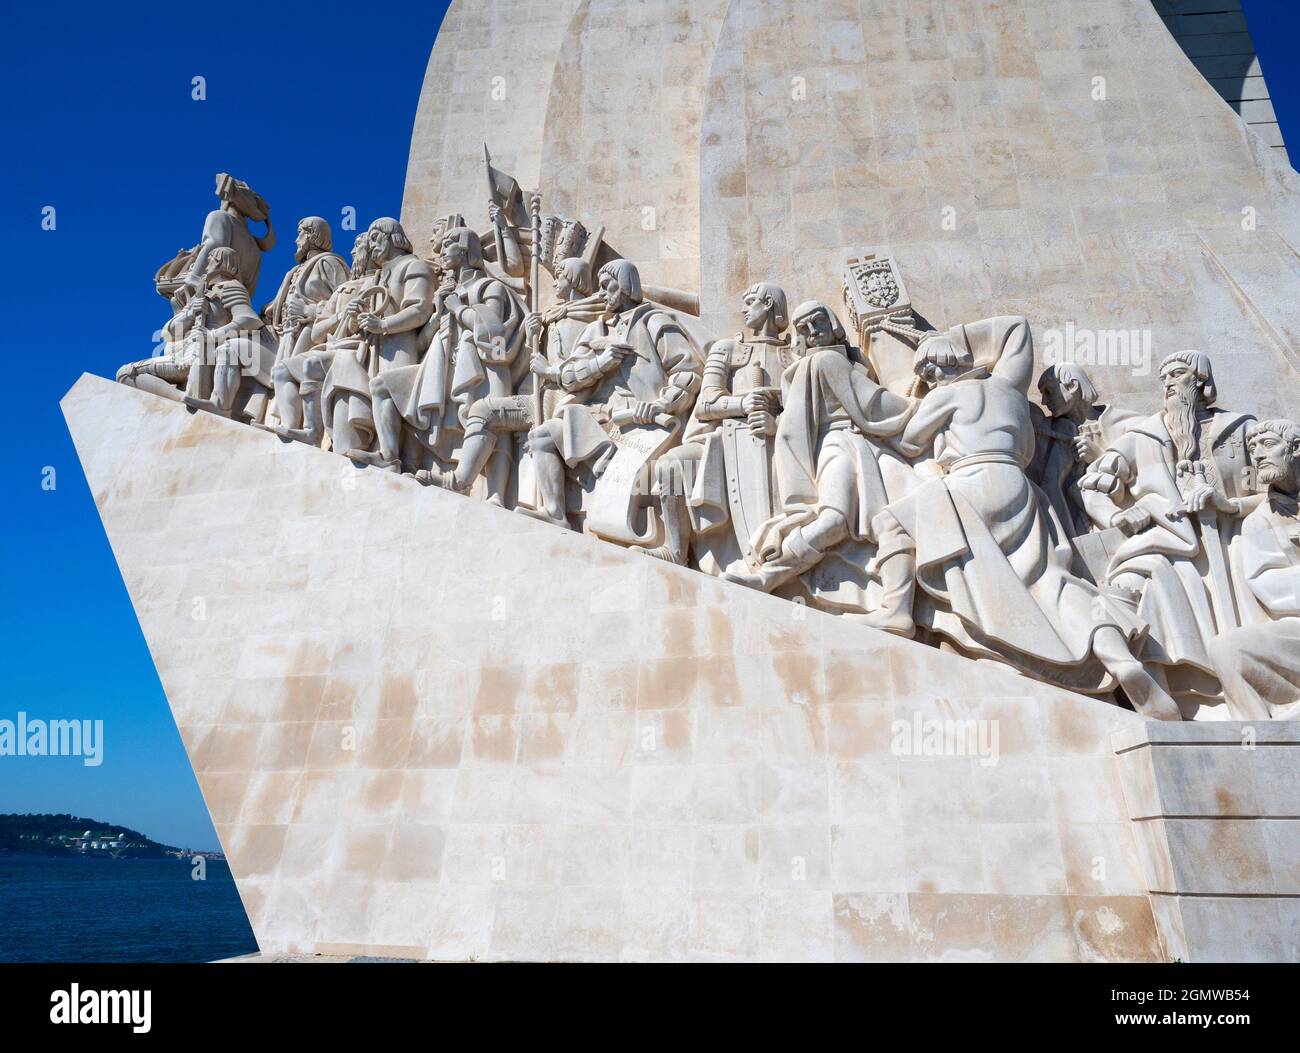 Lisbona, Portogallo - 8 aprile 2017; non ci sono persone in vista. Con una storia che risale ai tempi preistorici, Lisbona è una delle città più antiche d'Europa. N Foto Stock